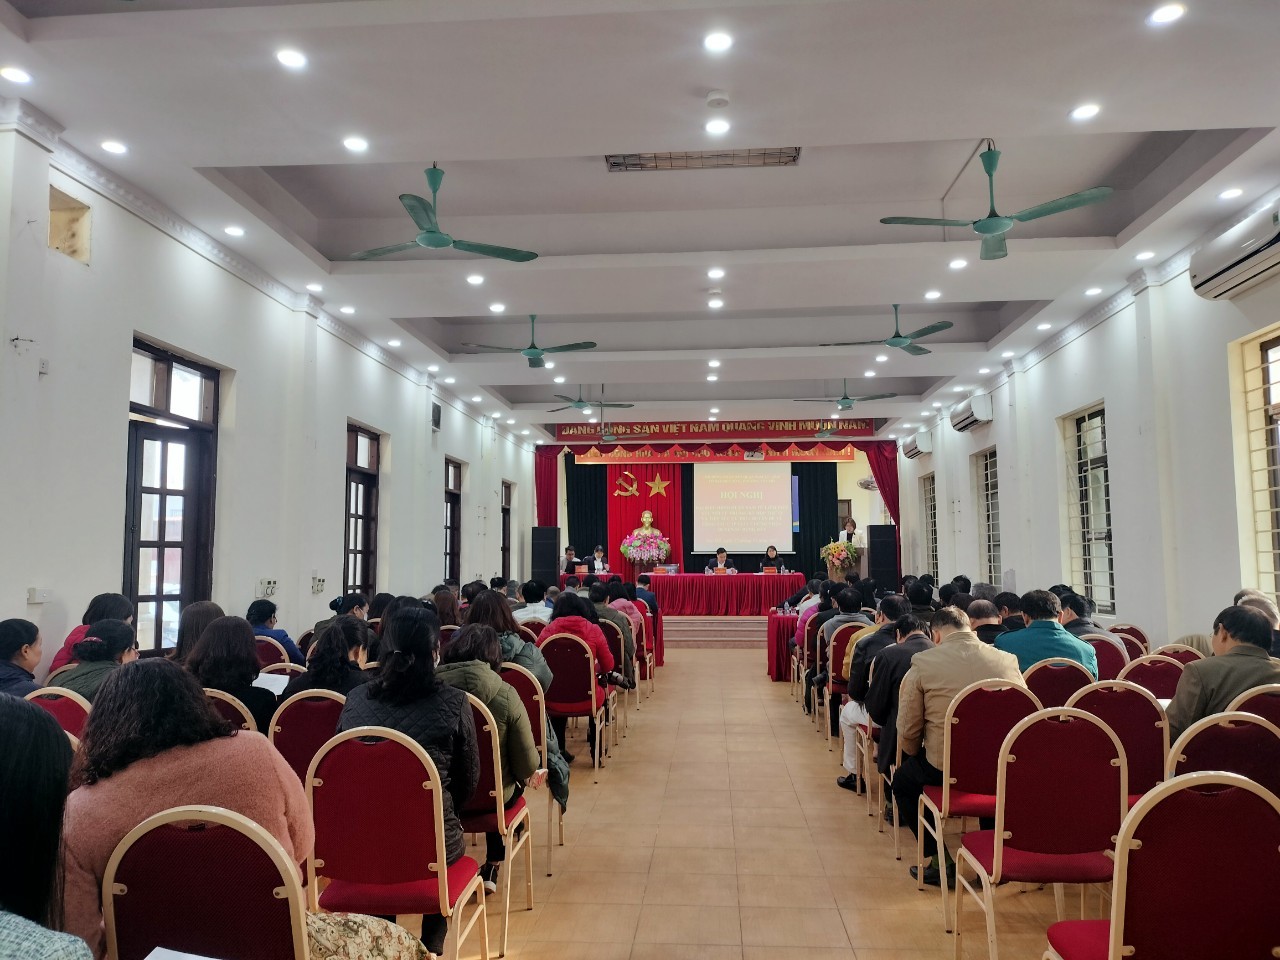 HĐND quận Nam Từ Liêm (Hà Nội) tiếp xúc cử tri phường Tây Mỗ